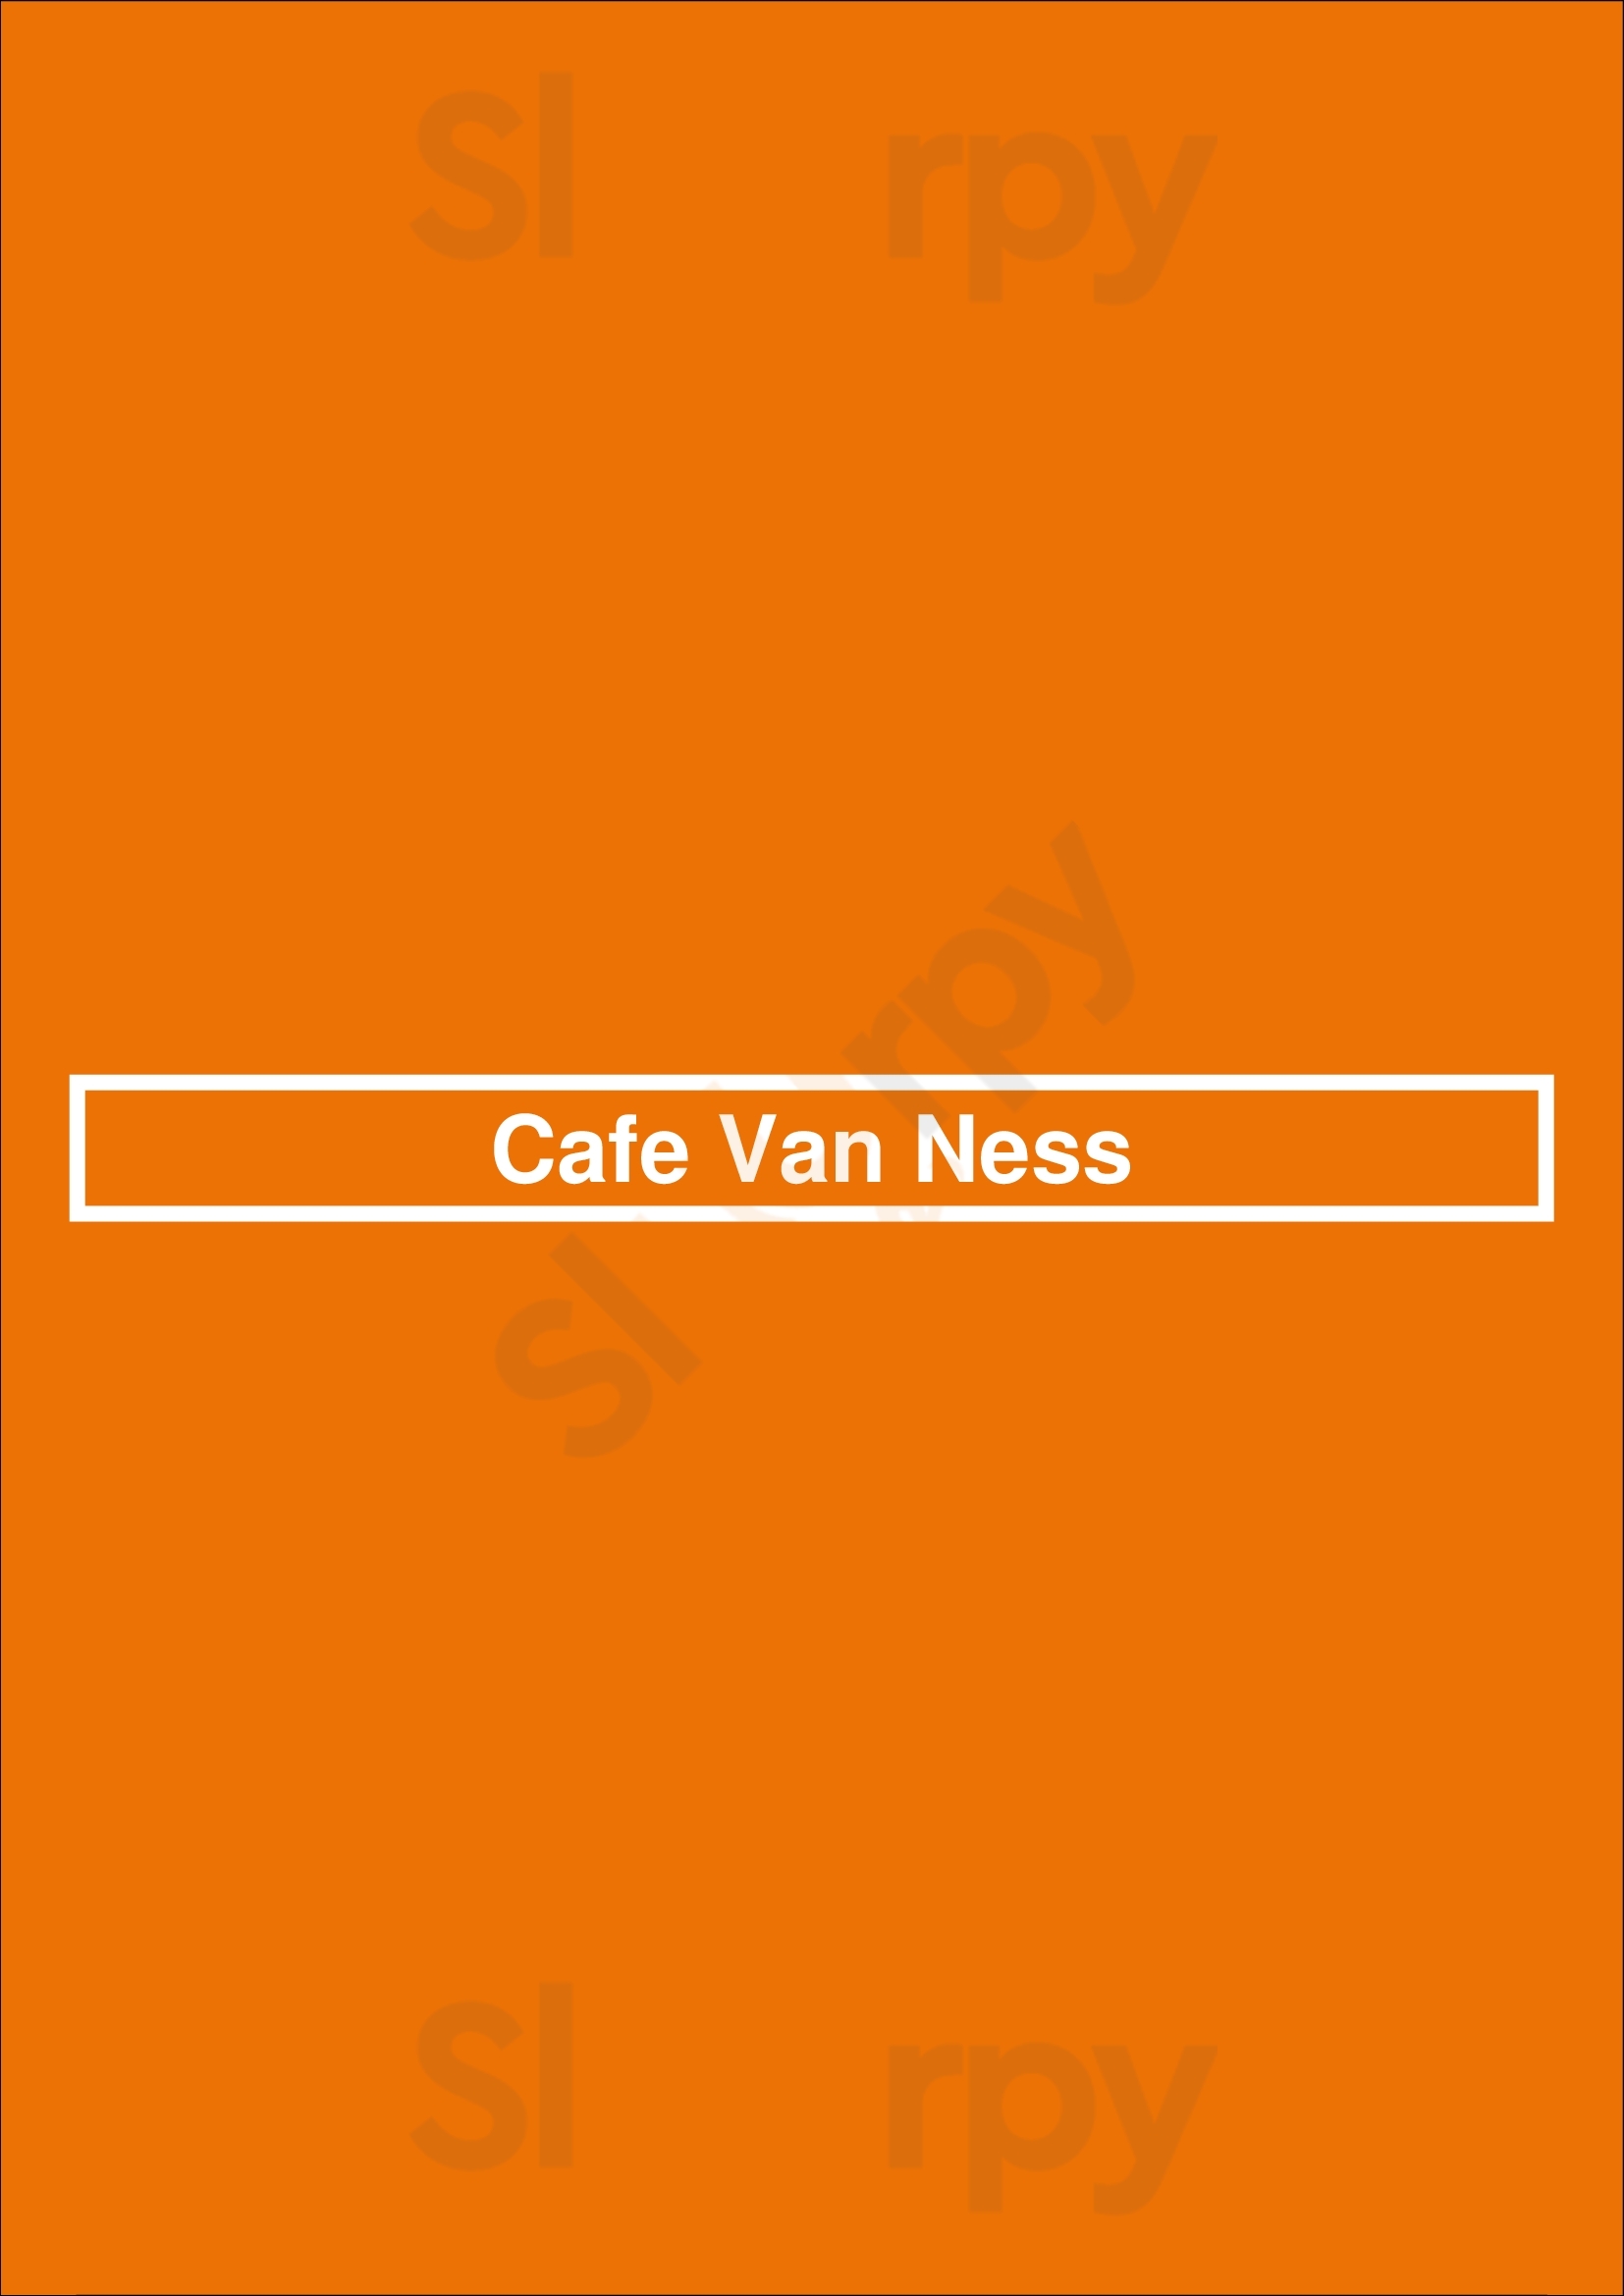 Cafe Van Ness Fresno Menu - 1